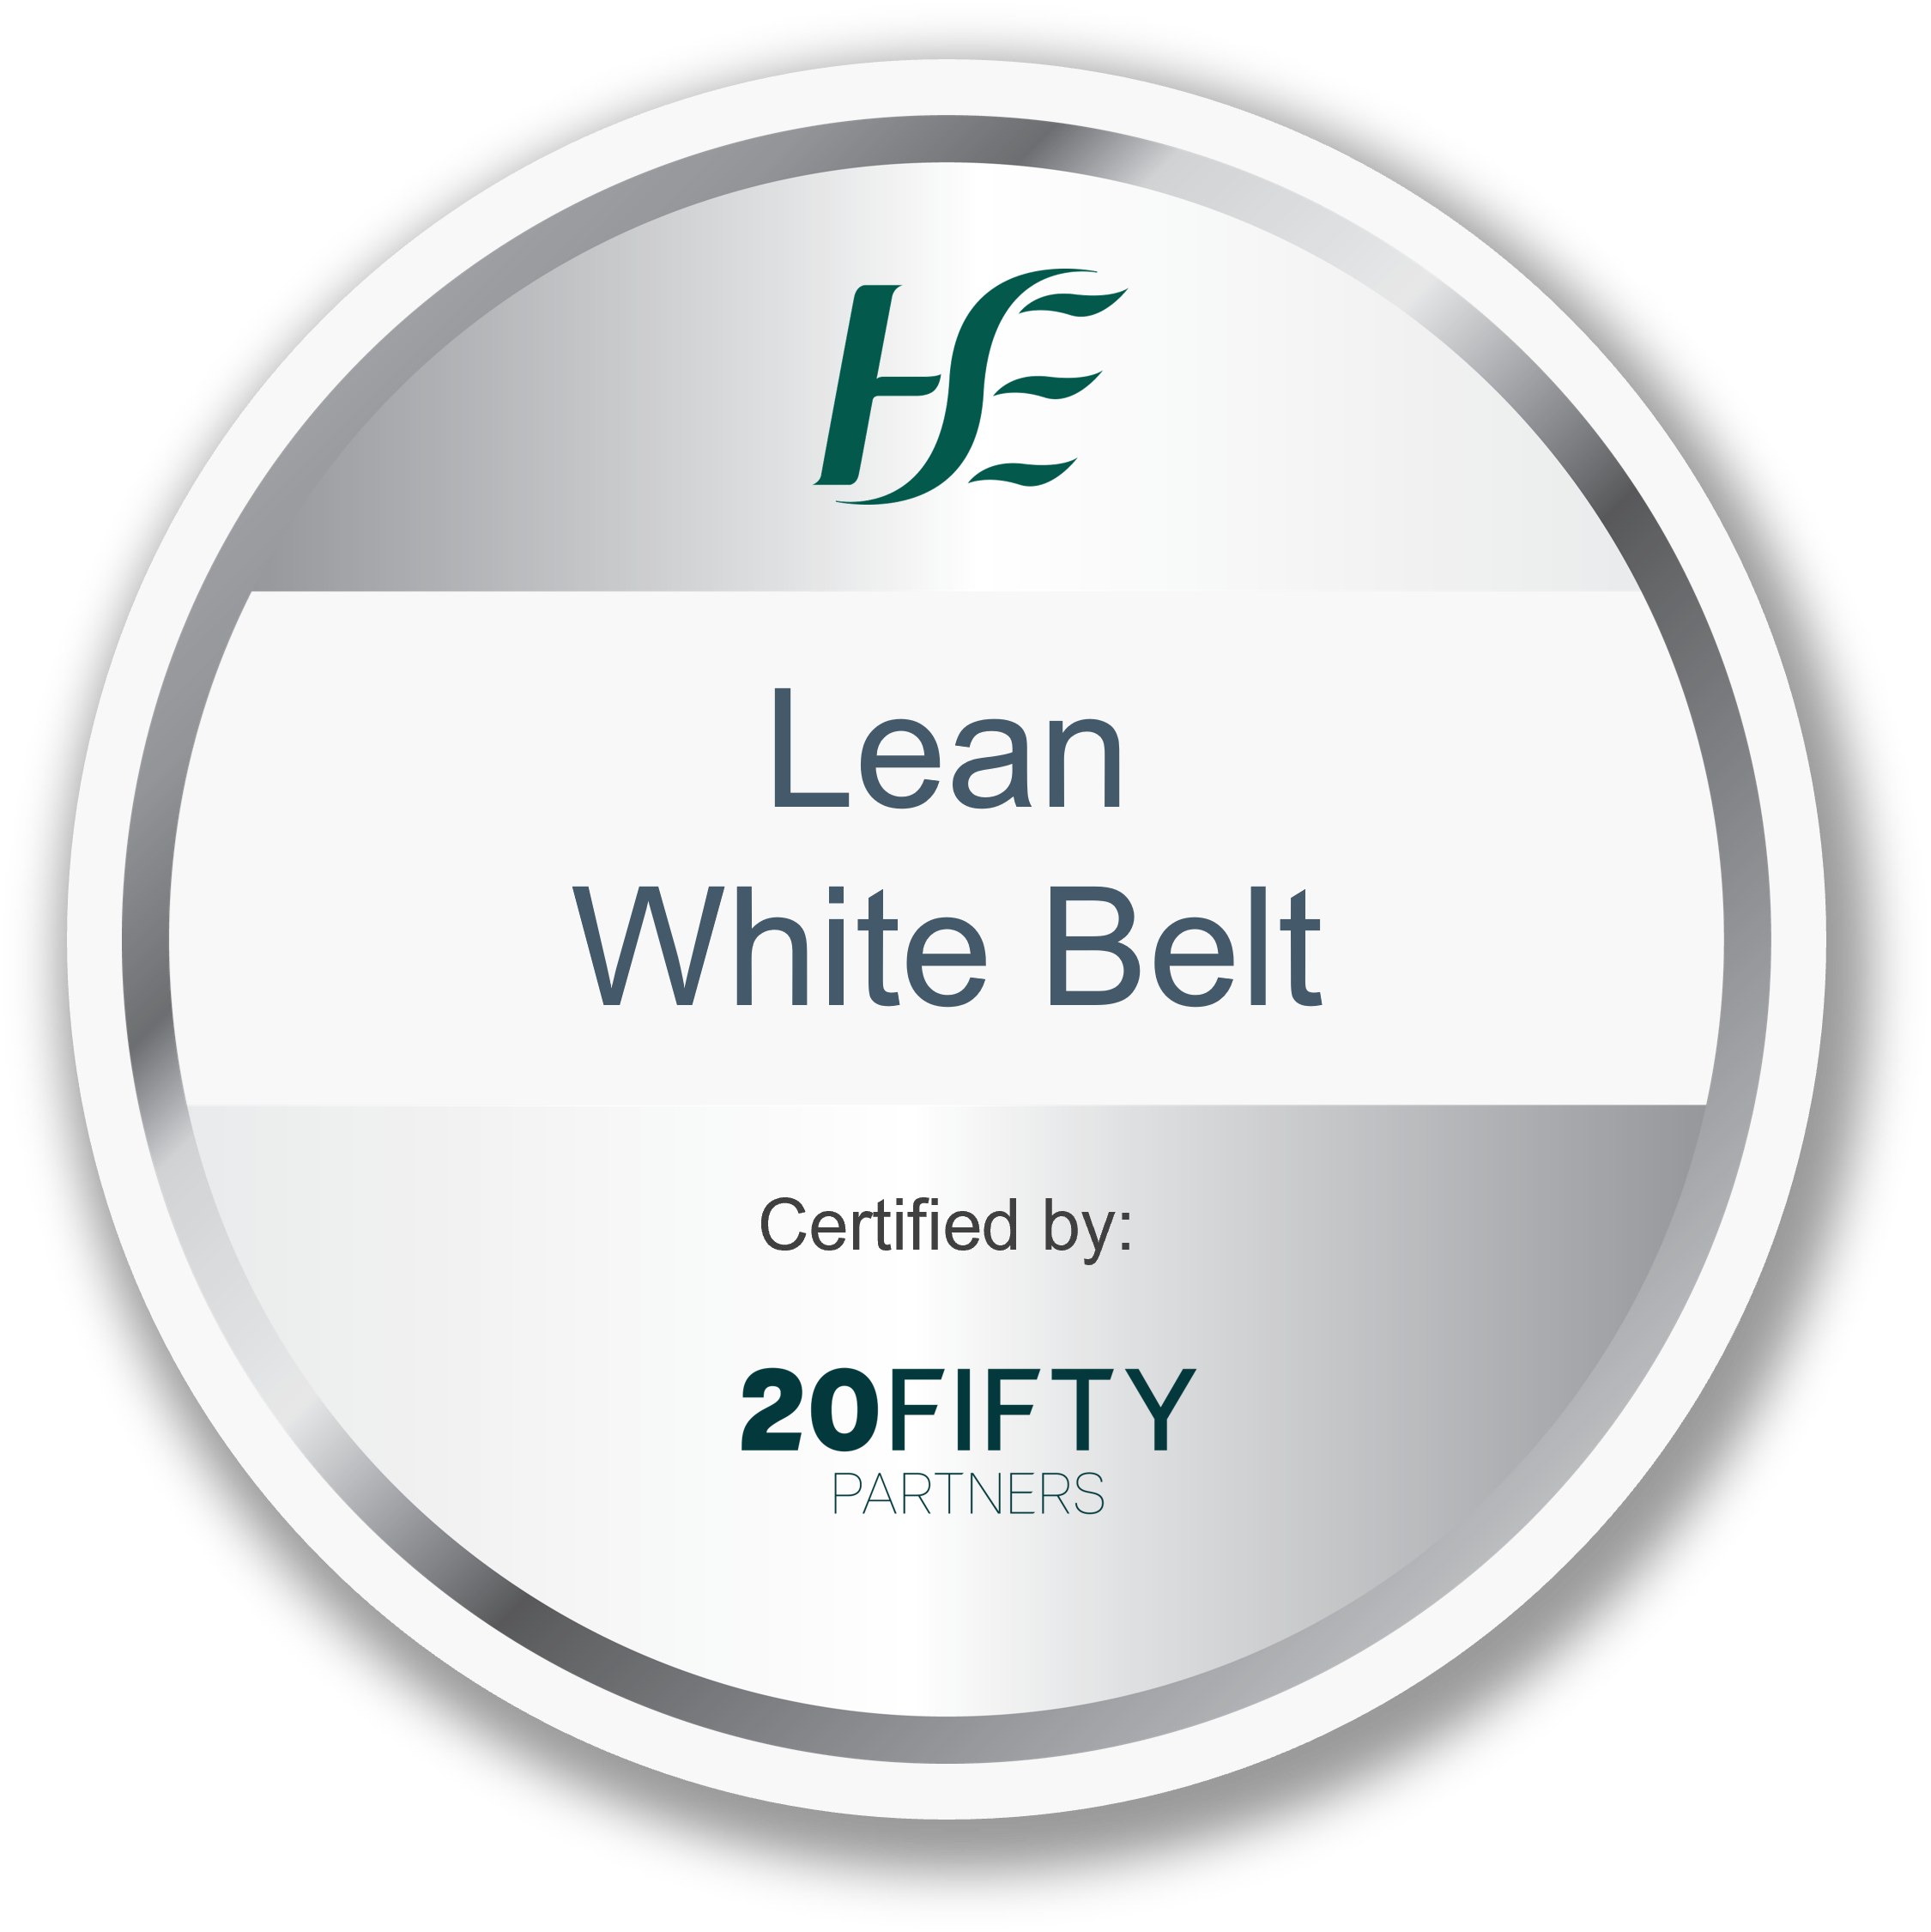 Lean White Belt